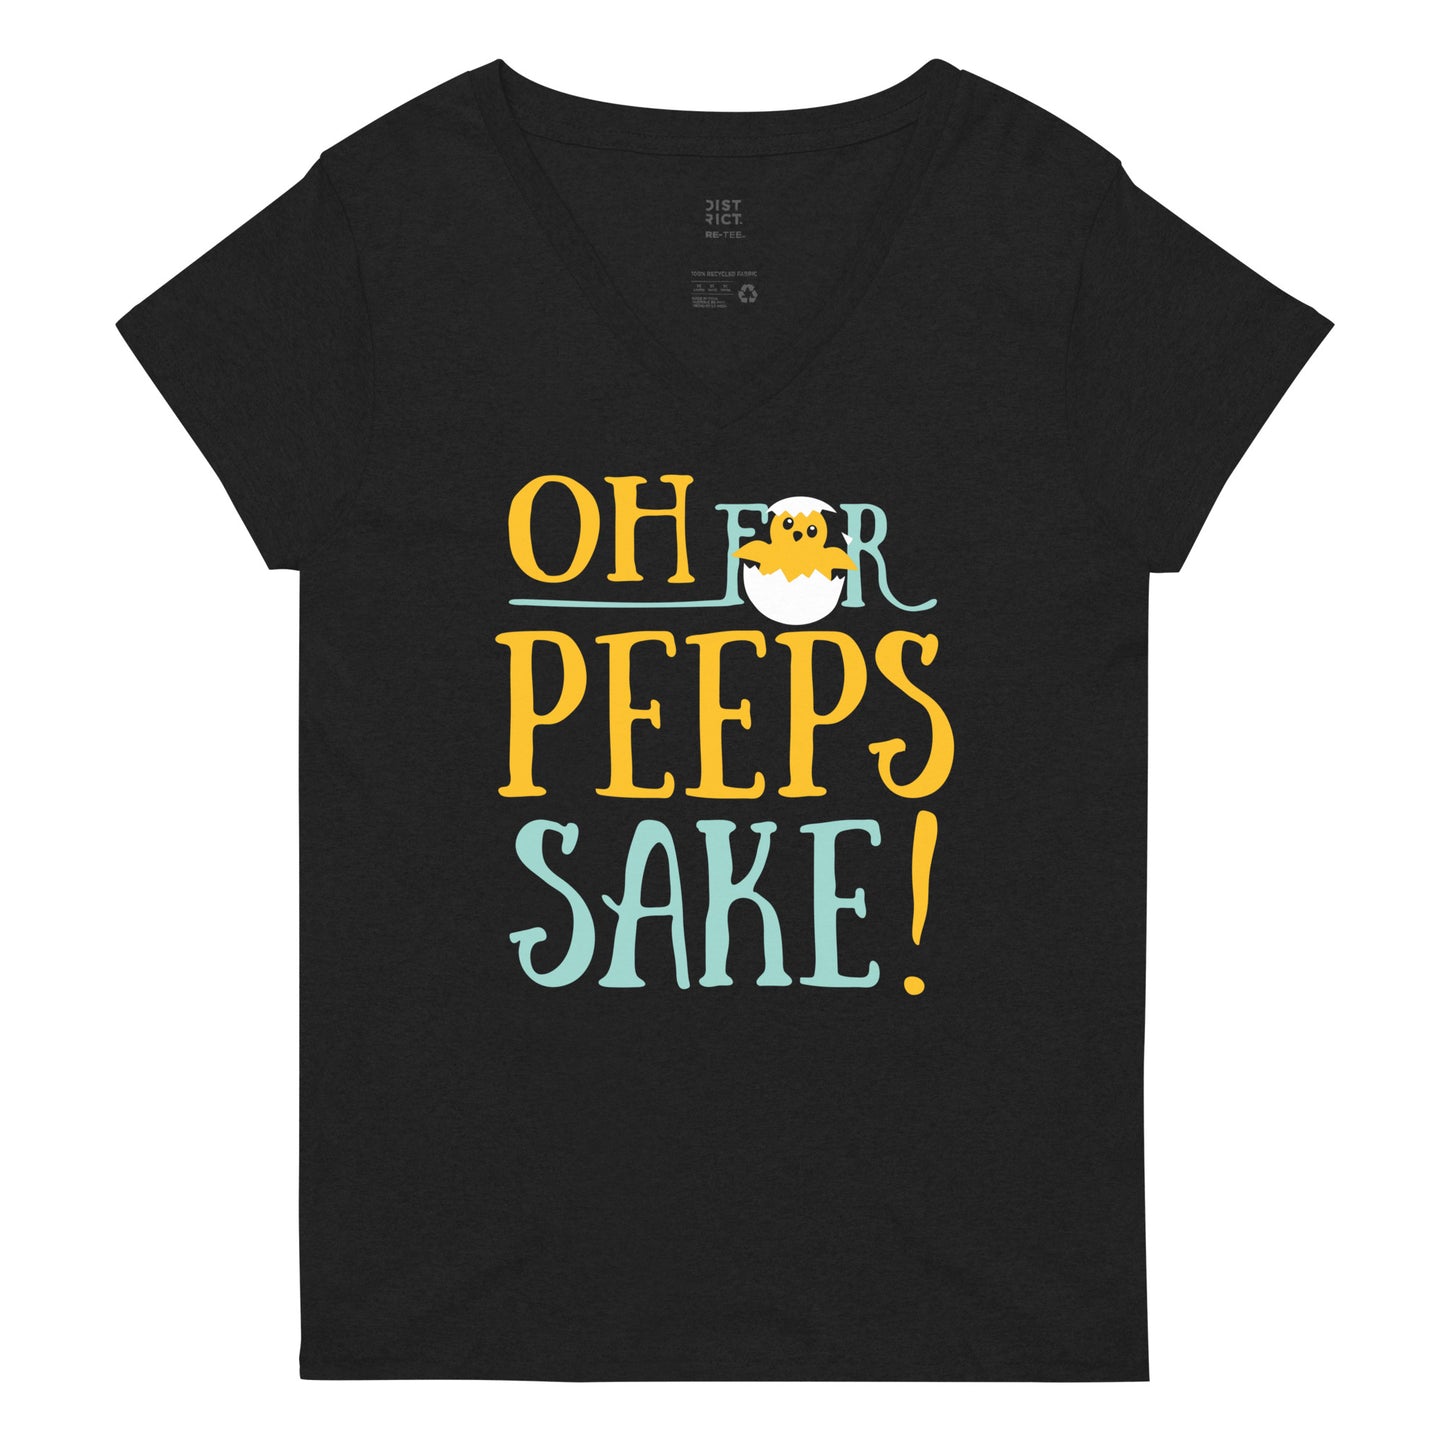 Oh For Peeps Sake Women's V-Neck Tee